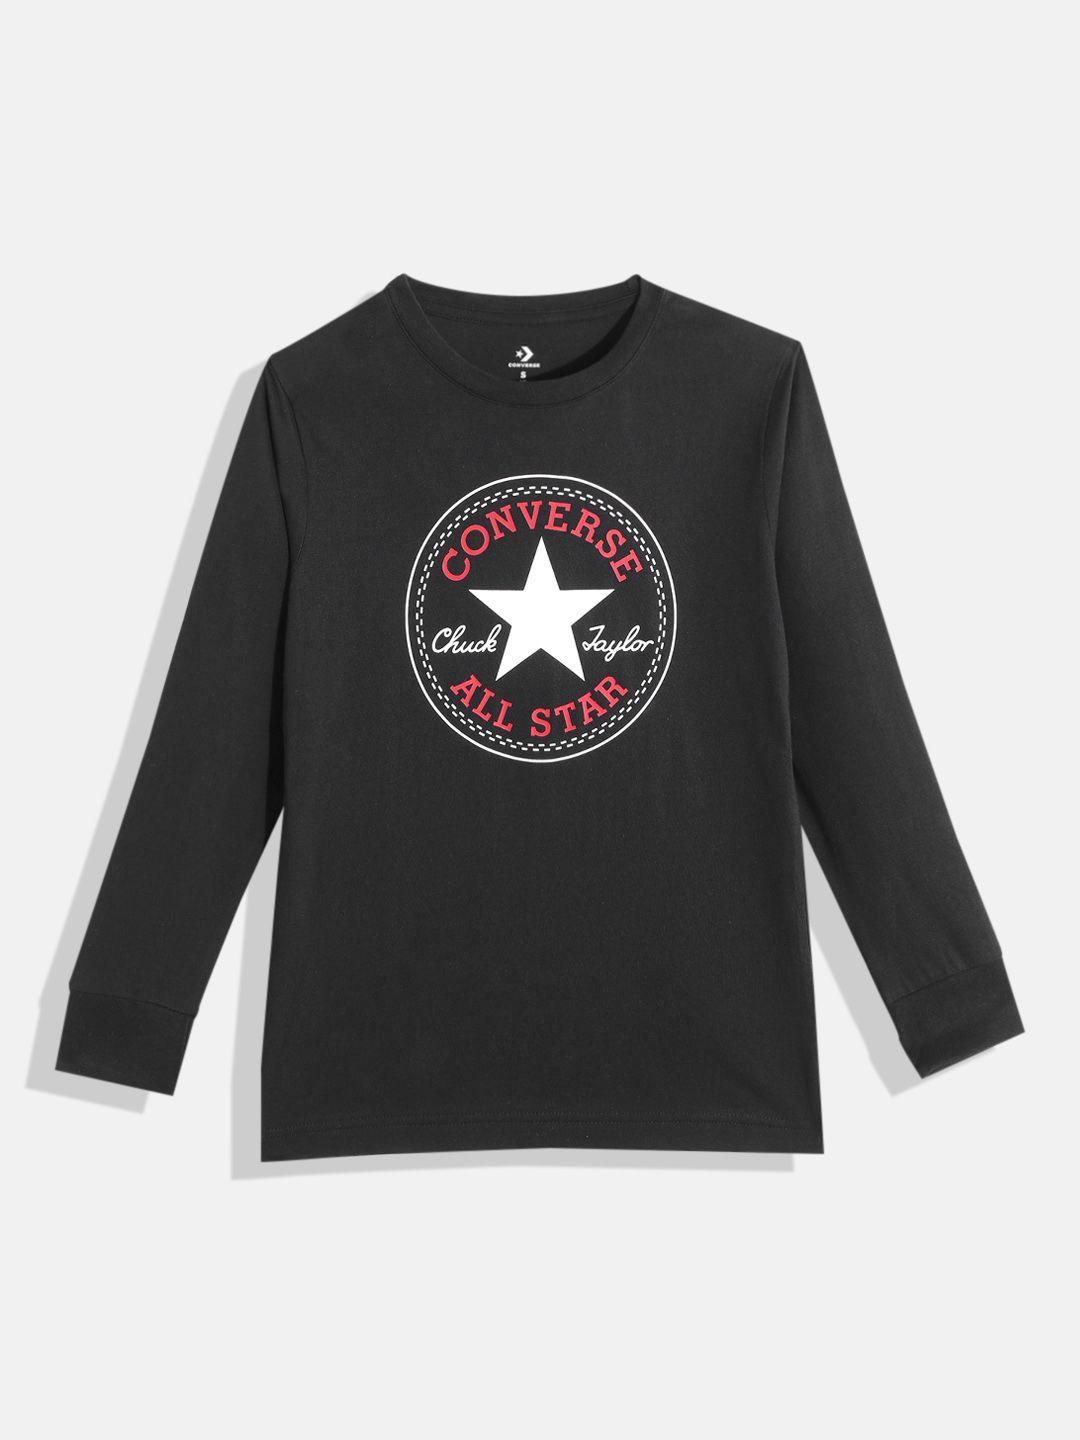 converse-boys-black-&-white-brand-logo-print-cotton-t-shirt